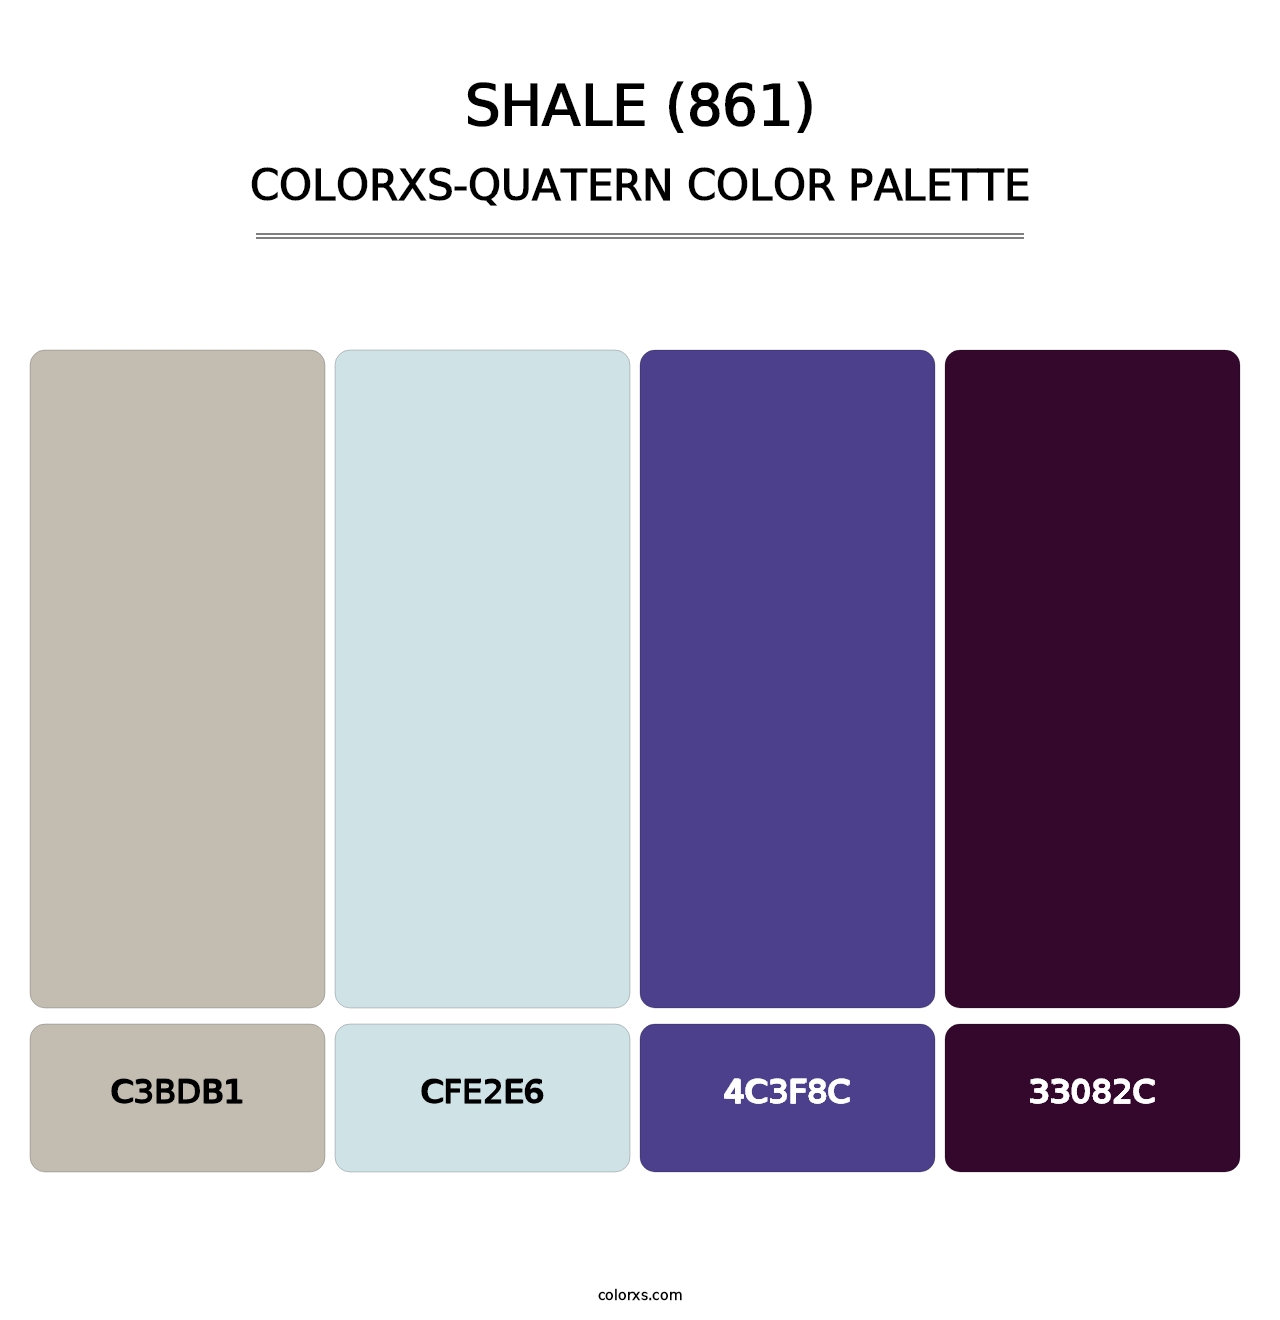 Shale (861) - Colorxs Quatern Palette